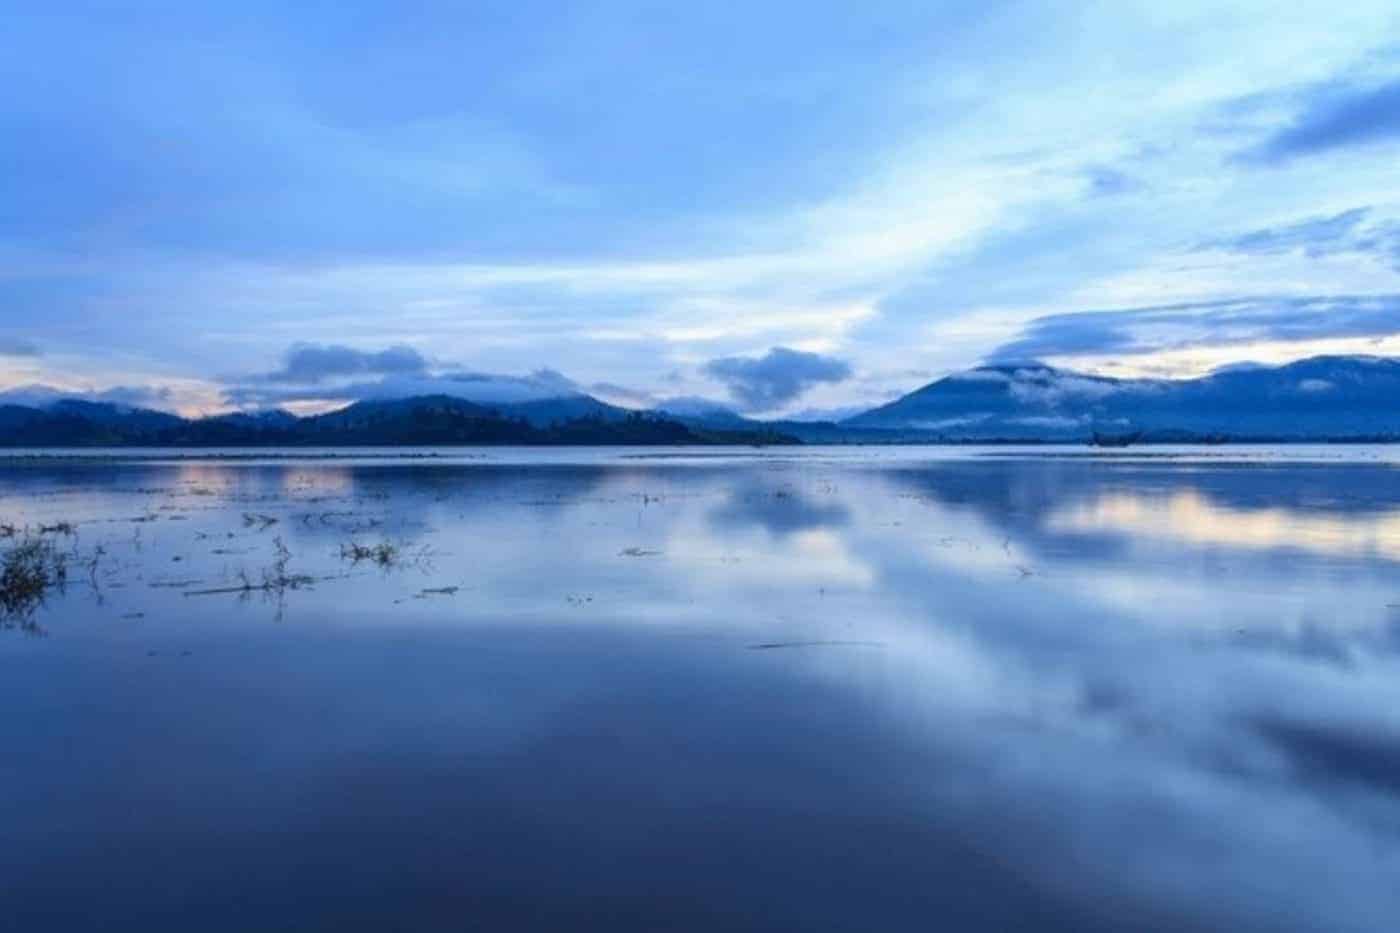 Khung cảnh Hồ Lắk thơ mộng giữa núi rừng Tây Nguyên_Ảnh sưu tầm